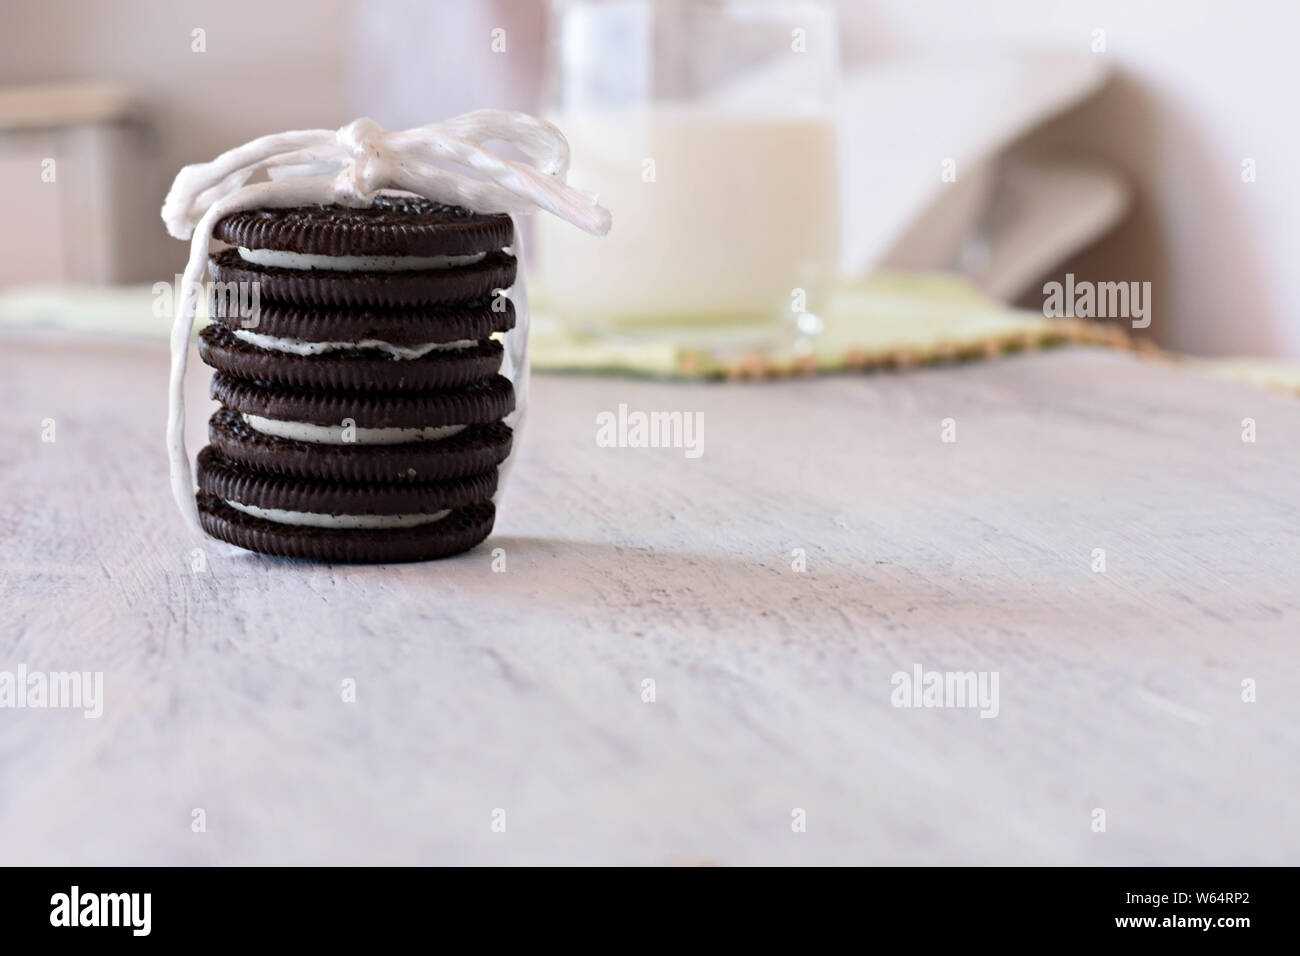 De délicieux cookies au chocolat avec crème vanille et verre de lait frais en arrière-plan/ artwork de sweet petit-déjeuner sain Banque D'Images